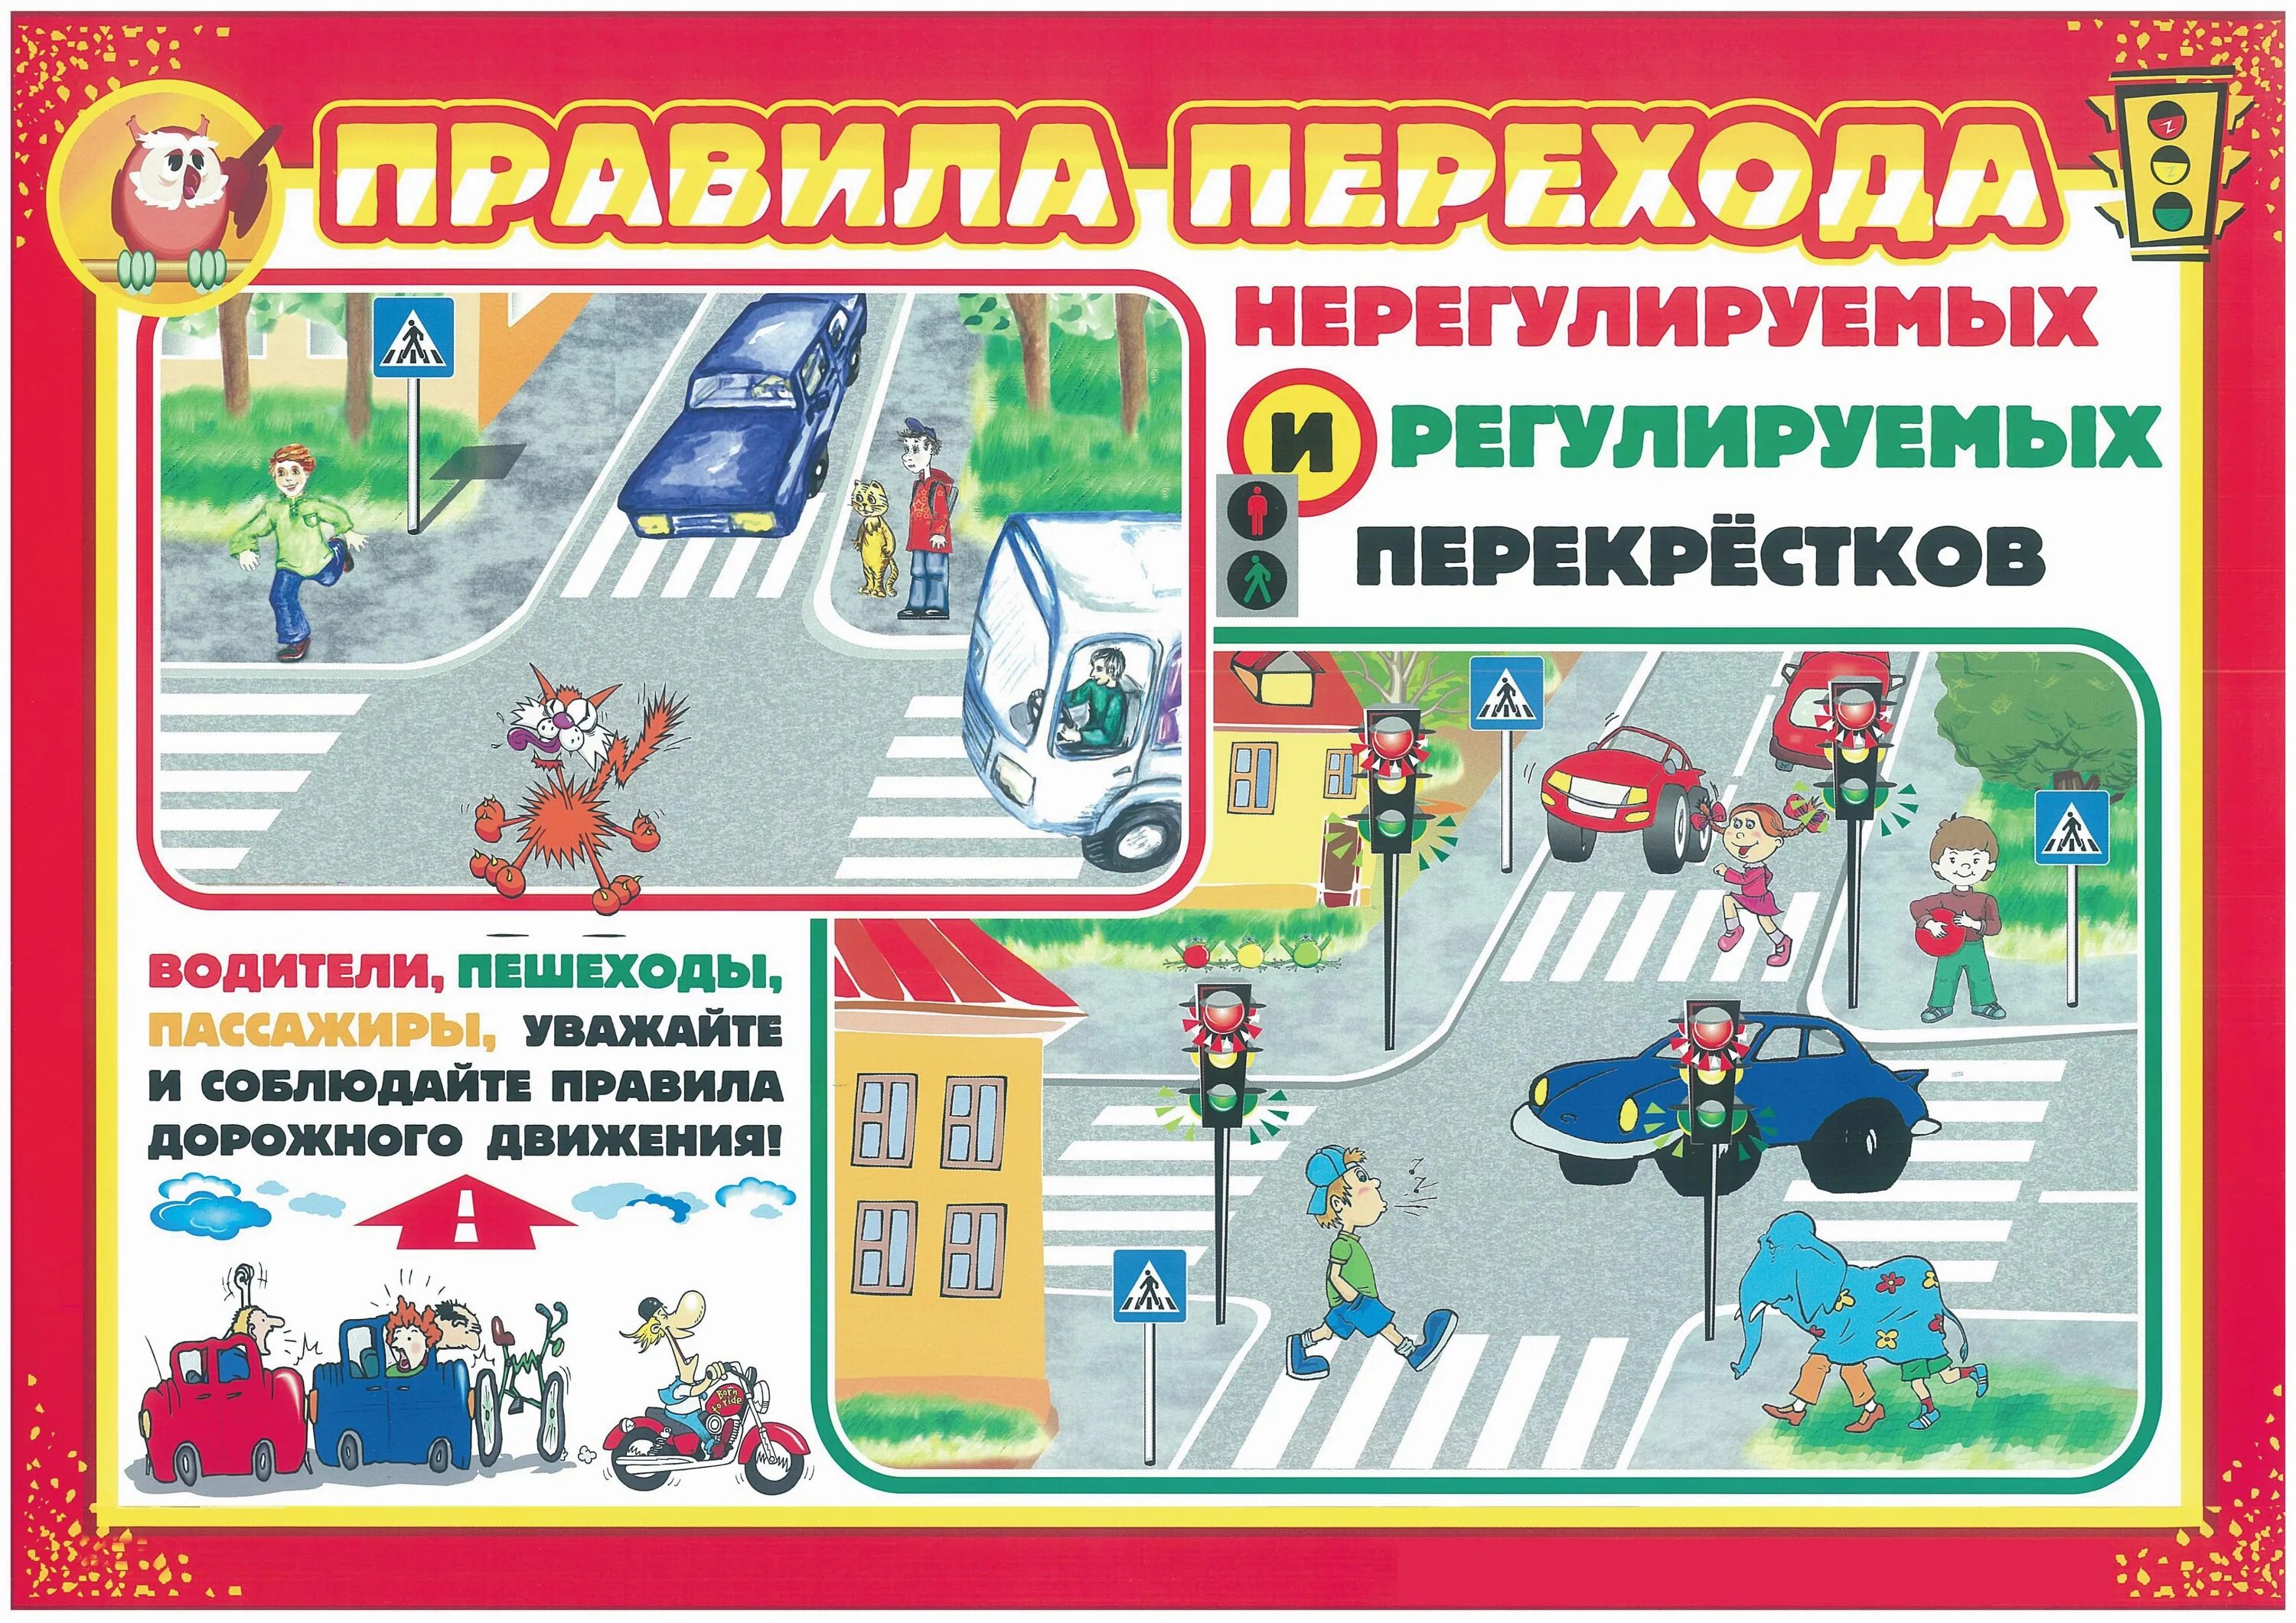 Пдд по разделам. Правила дорожного движения. Правила дорожного движения для детей. Безопасность на дороге для дошкольников. Плакат по правилам дорожного движения.